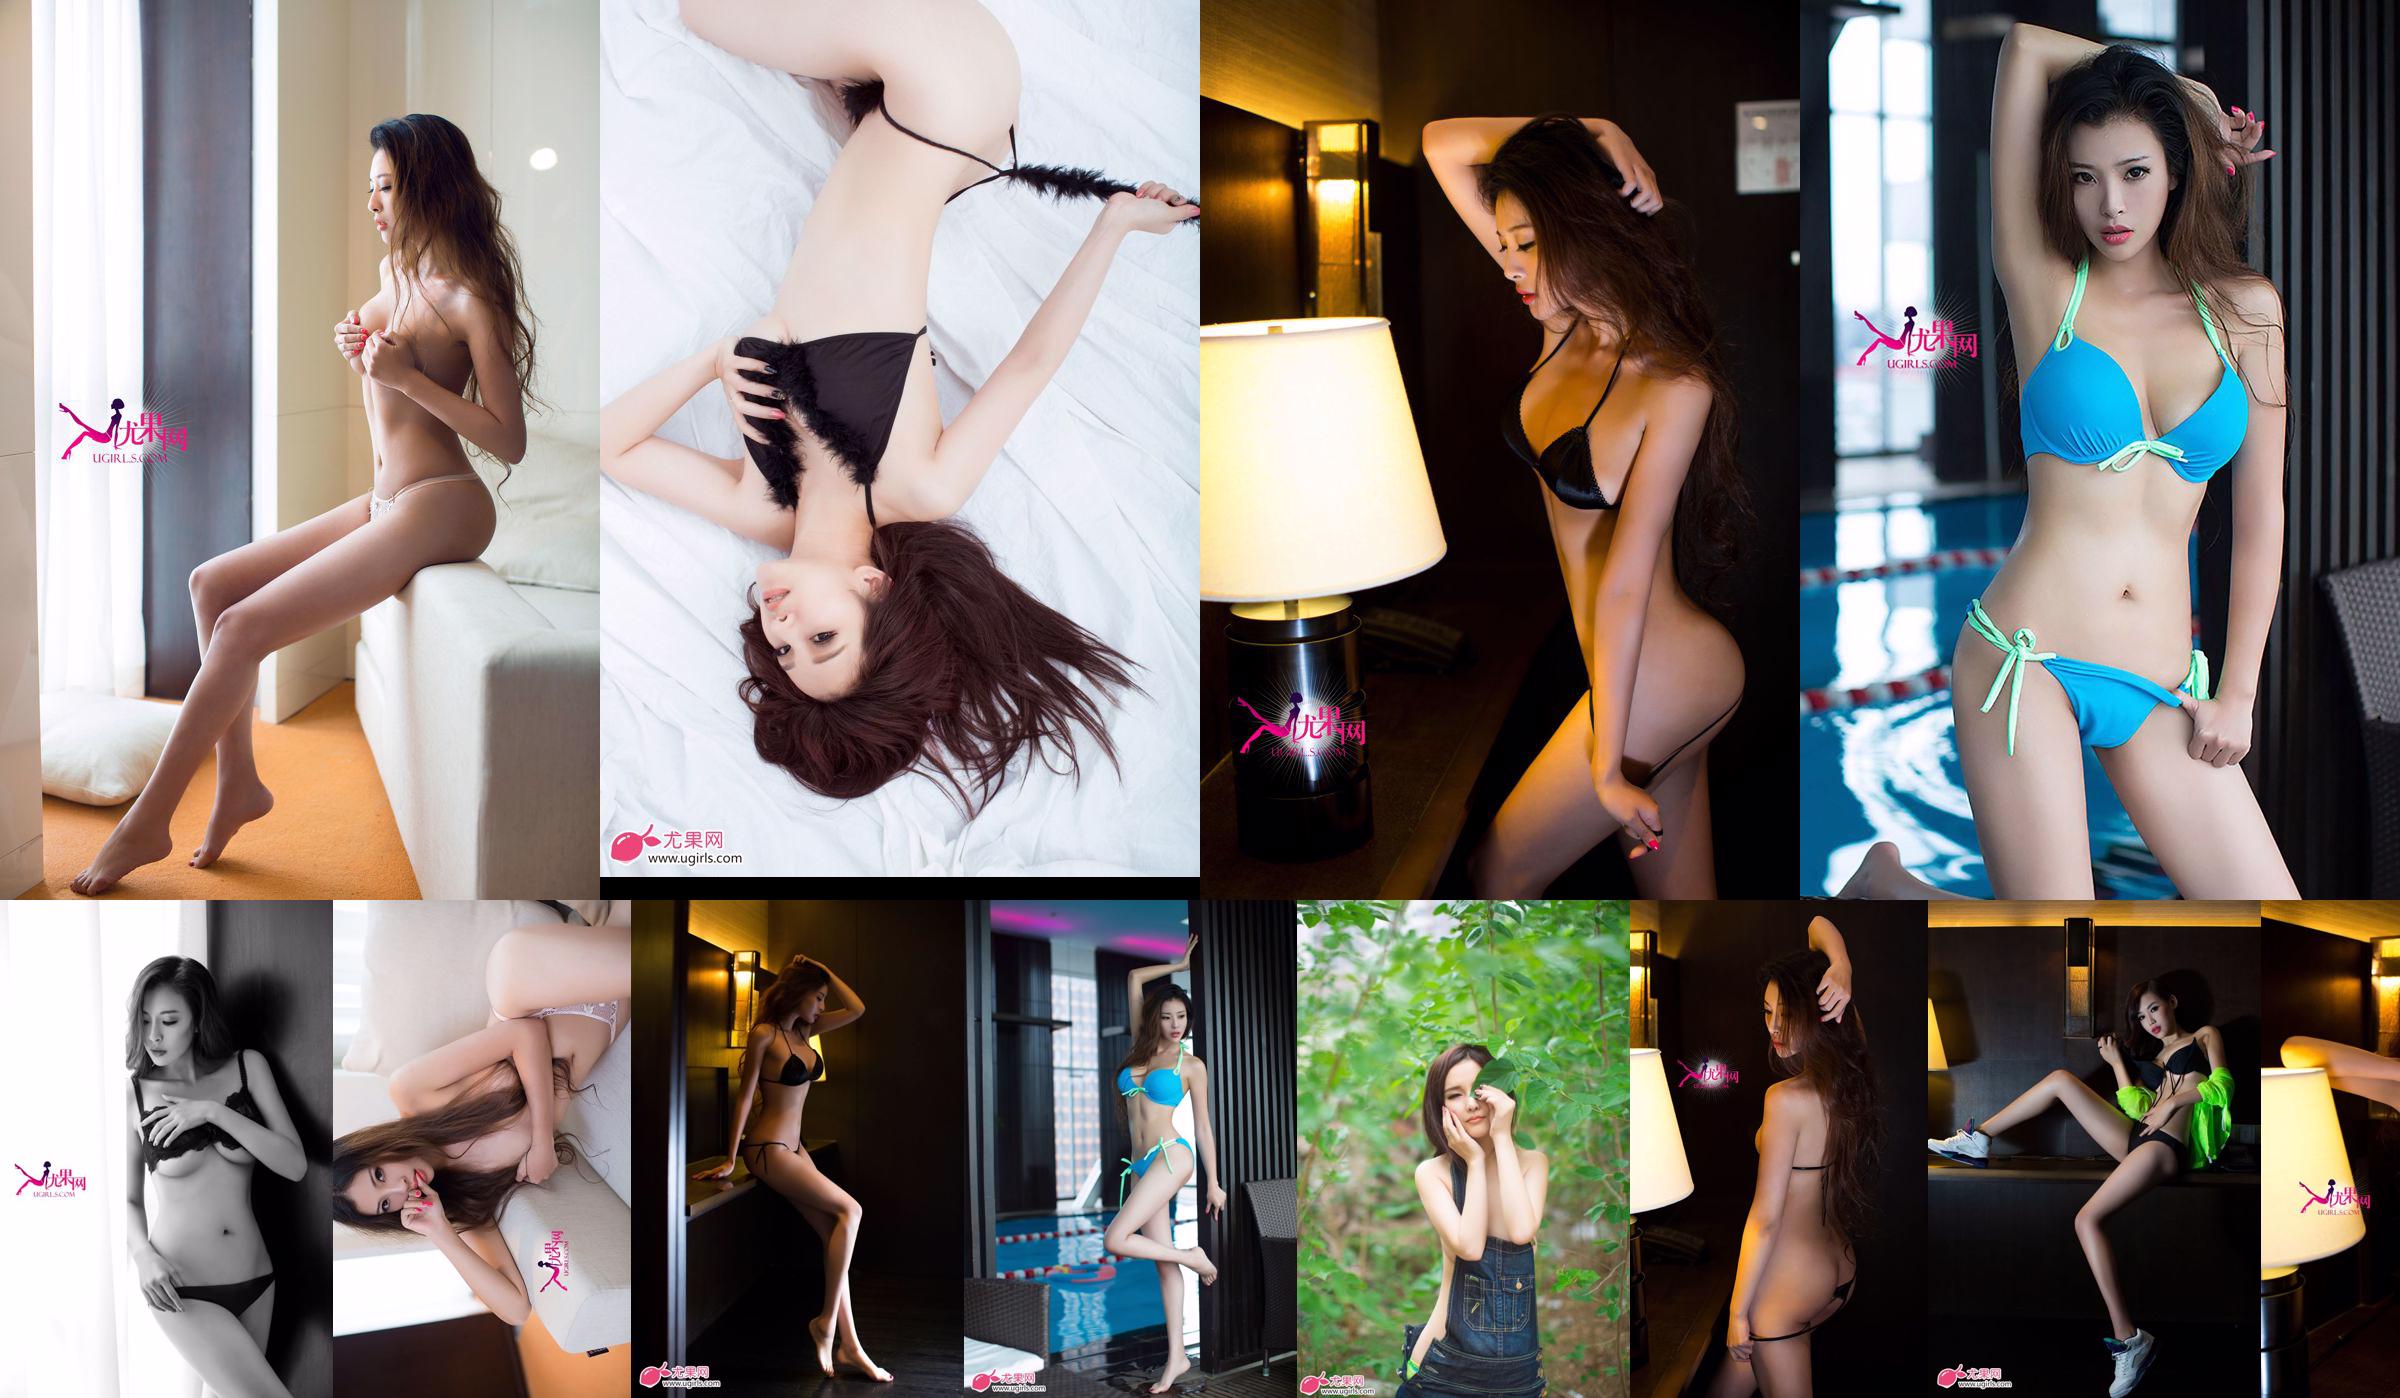 [Ugirls] E043 Long-legged model Zeng Chen "Summer Sexy" No.dd6722 Page 1